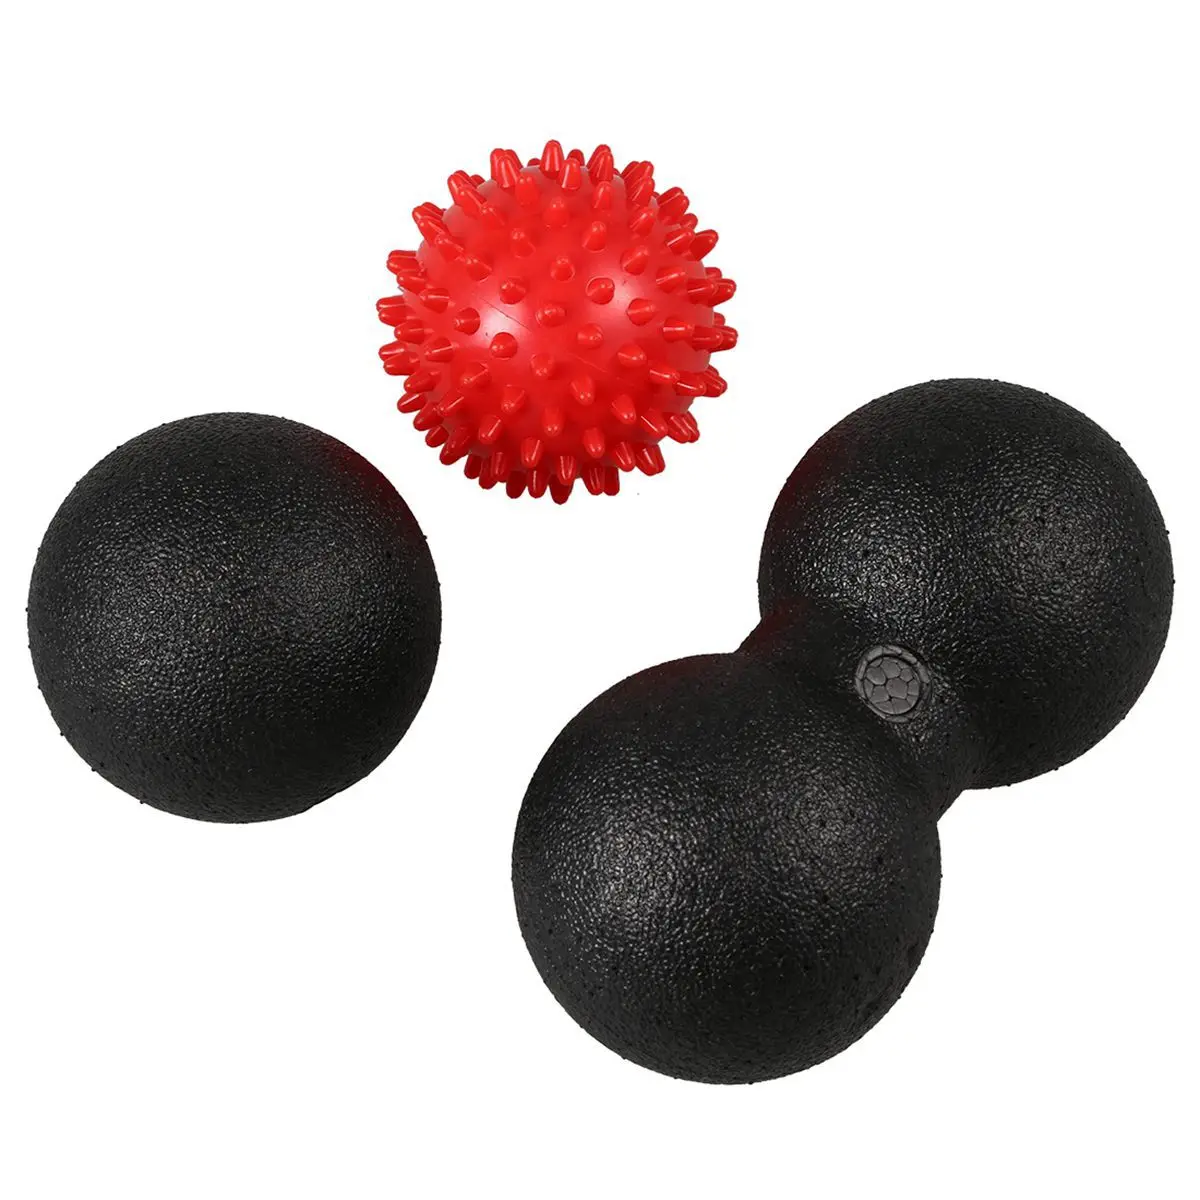 Lgfm-массажный мяч набор 1 мяч для Лакросса + 1 мяч для двойной, для Лакросса + 1 колючий мяч для Акупунктура-релиз Tight Muscle